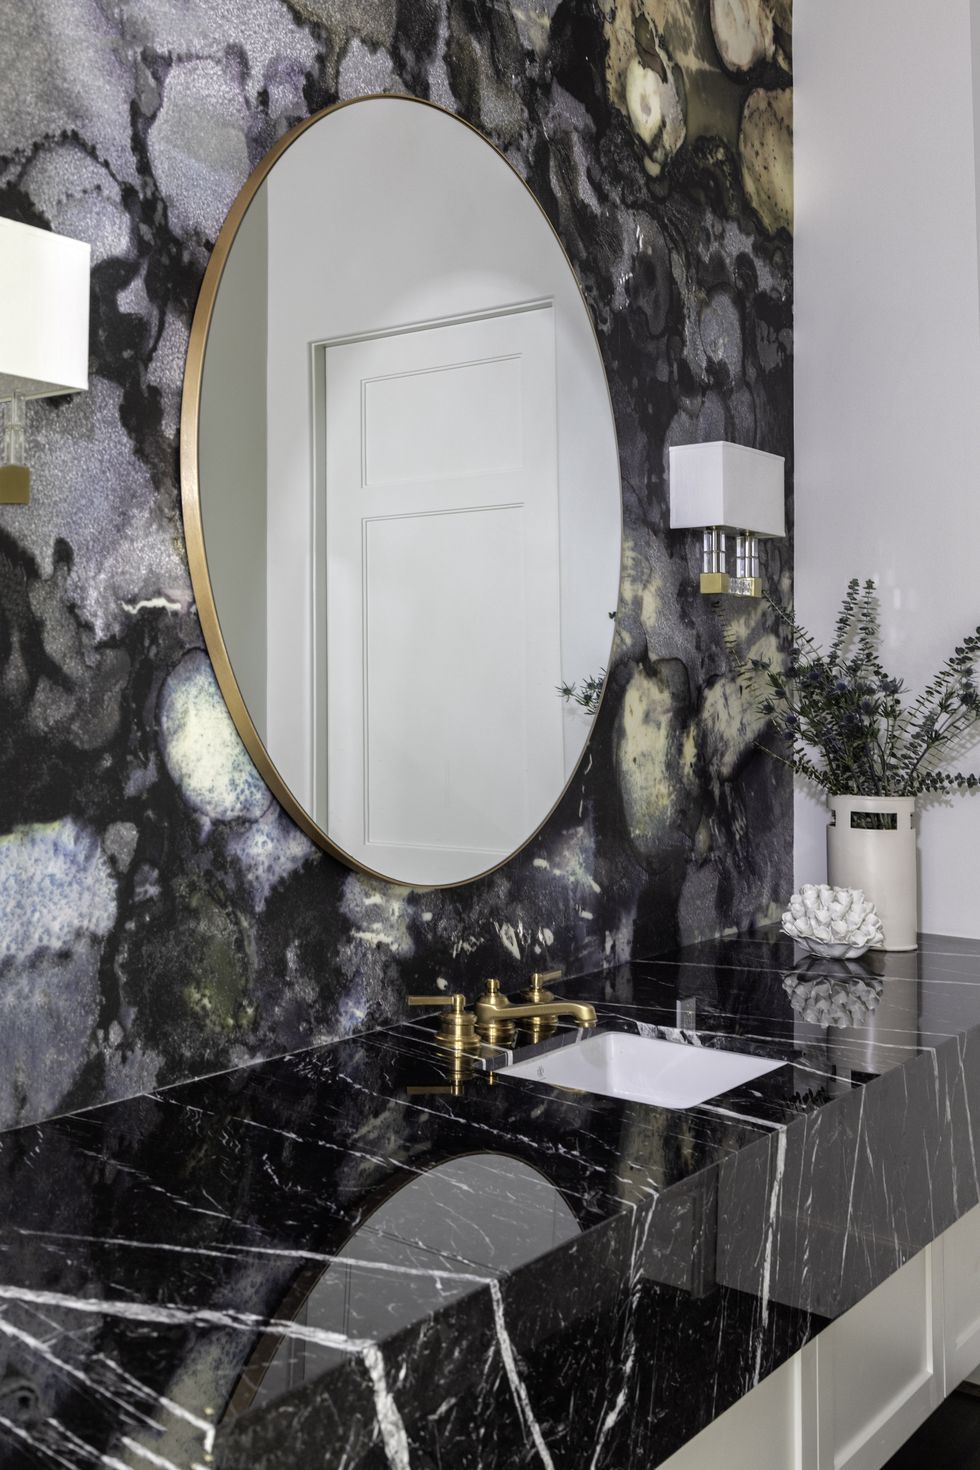 Использование в ванной комнате матовых медных деталей создает в помещении романтичную атмосферу и добавляет ему определенную степень гламура